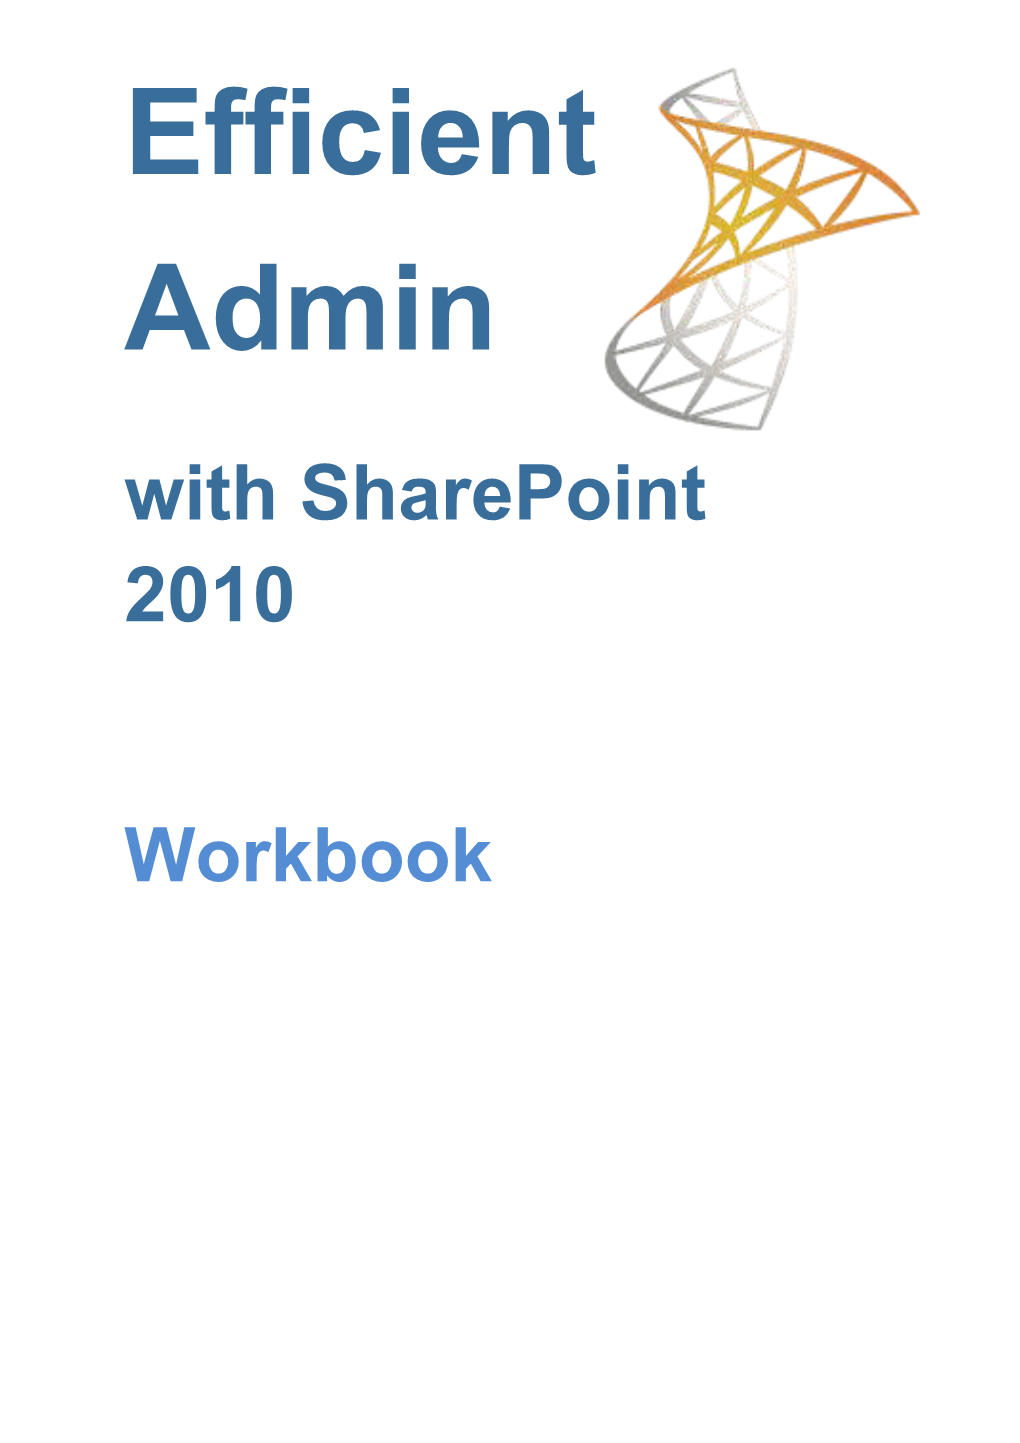 Efficient Admin with Sharepoint 2010 Workbook